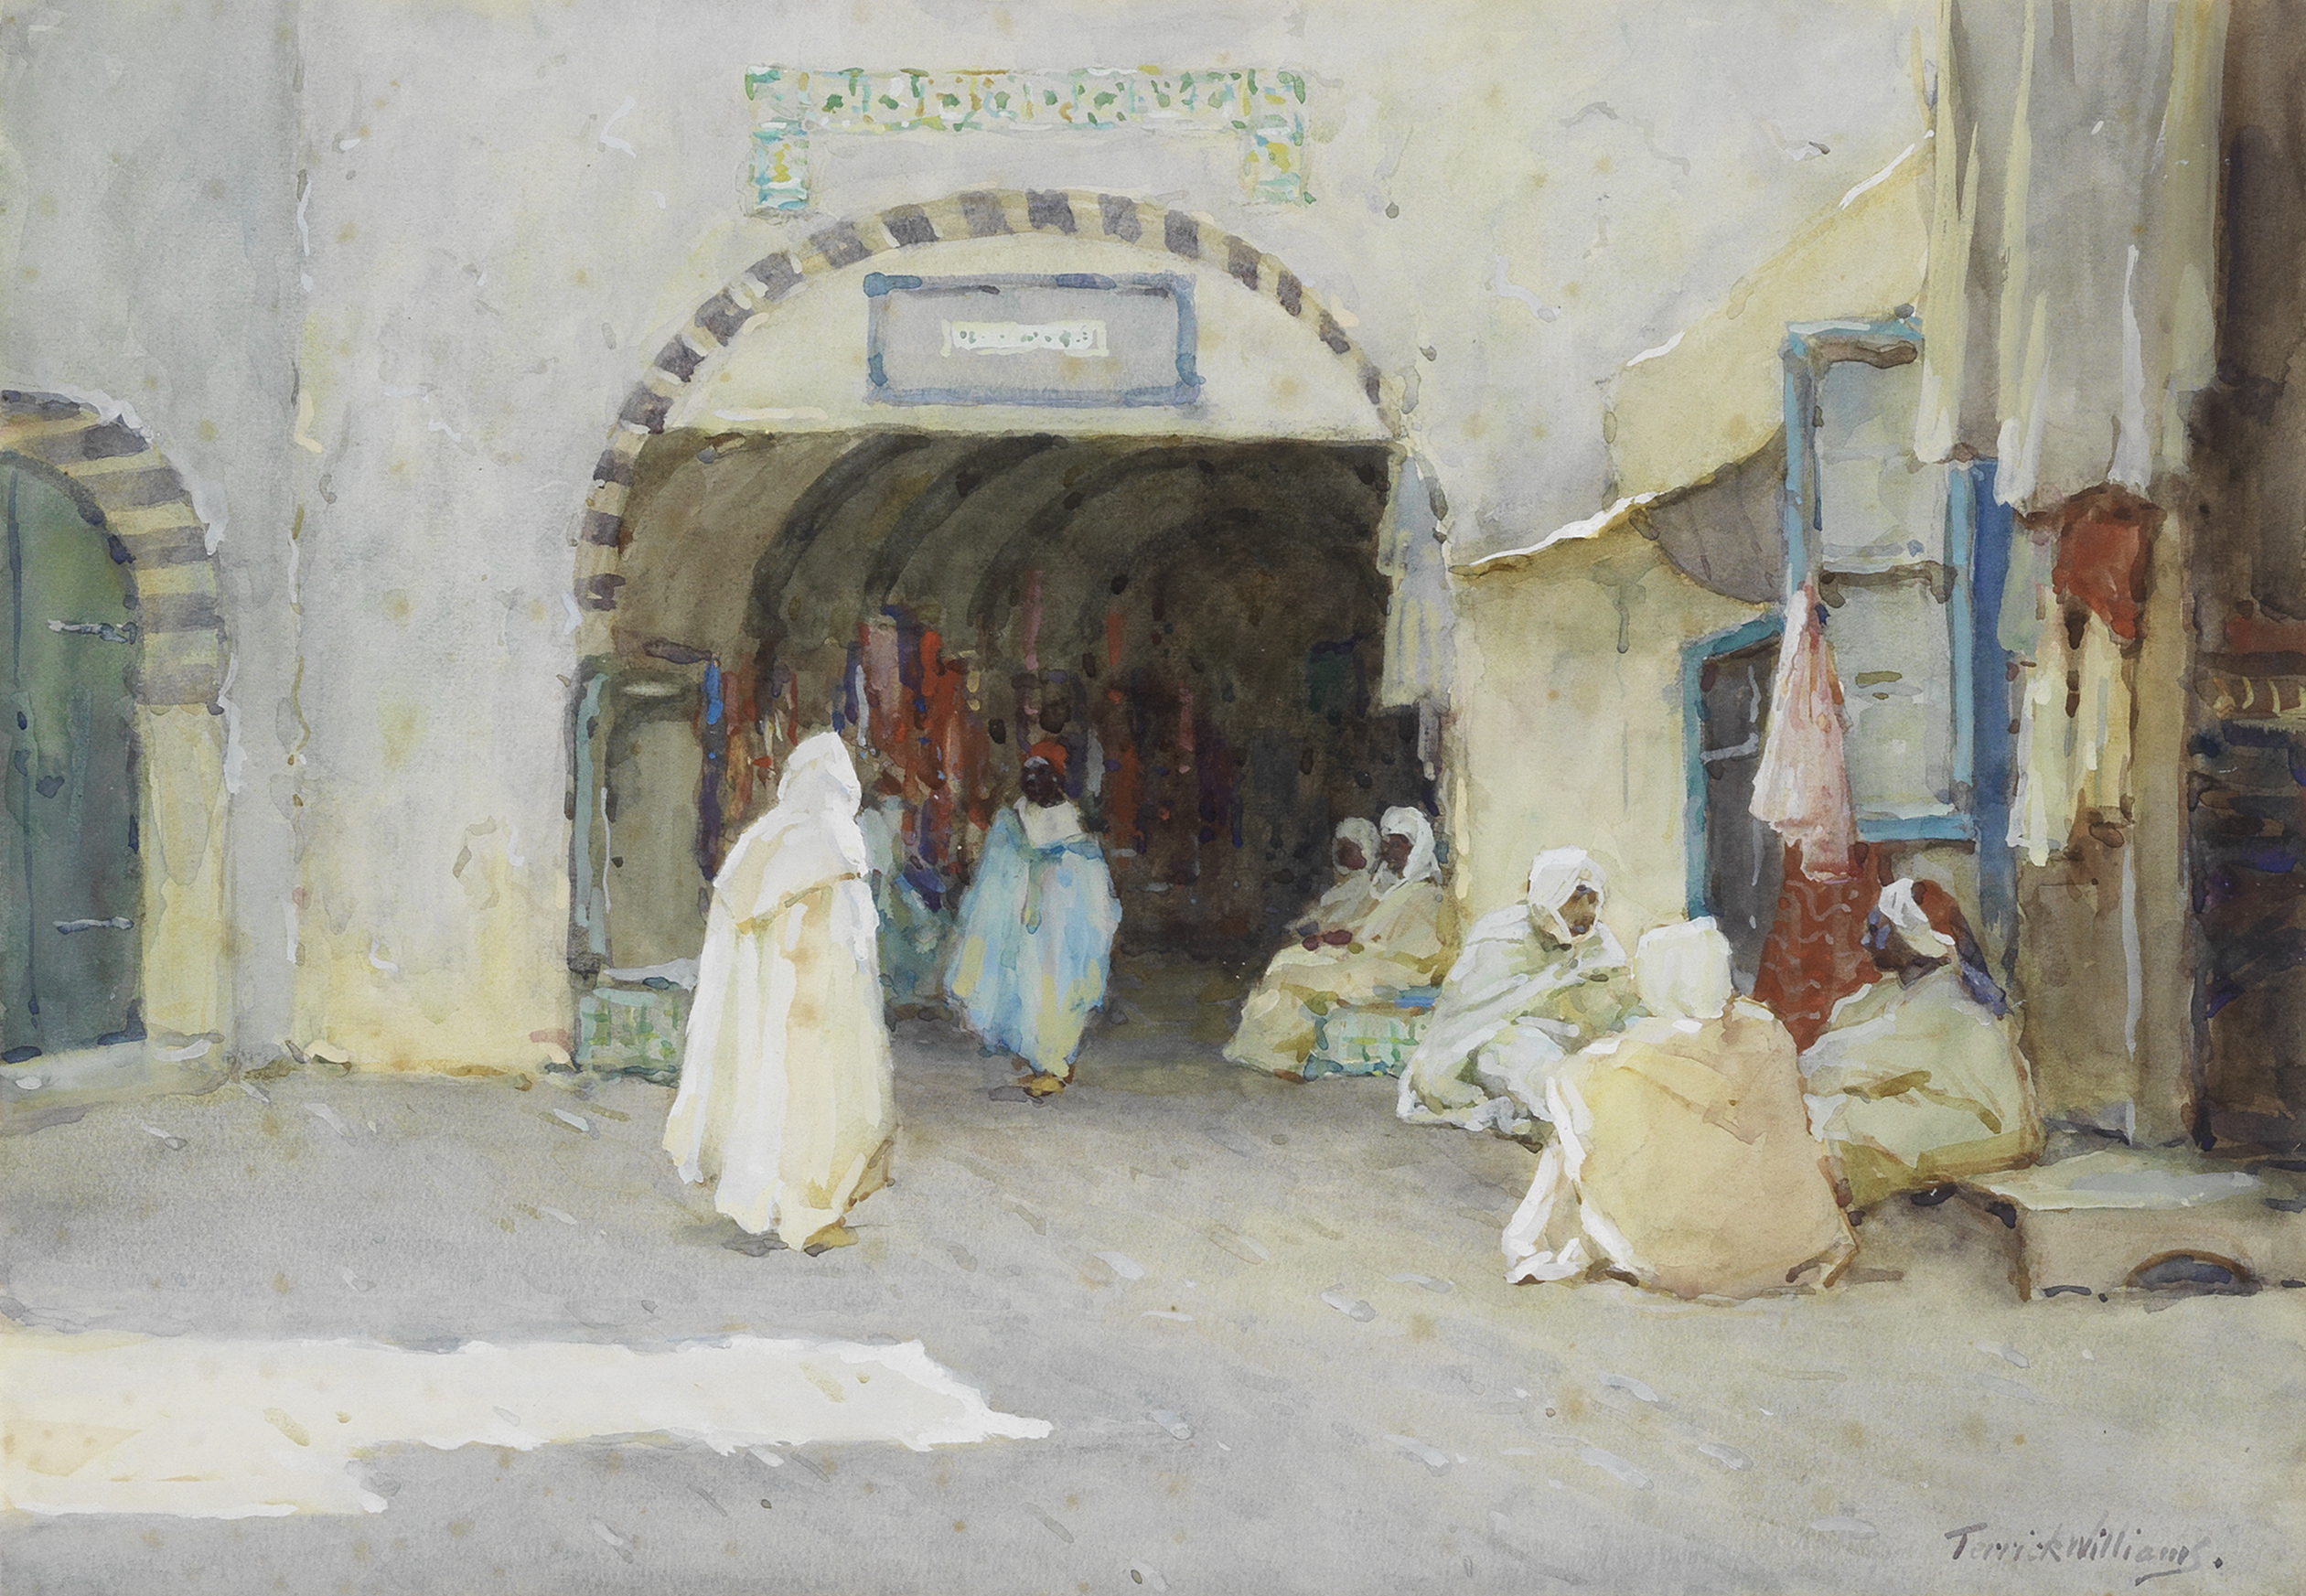 Terrick Williams (British, 1860-1936) Tunisia